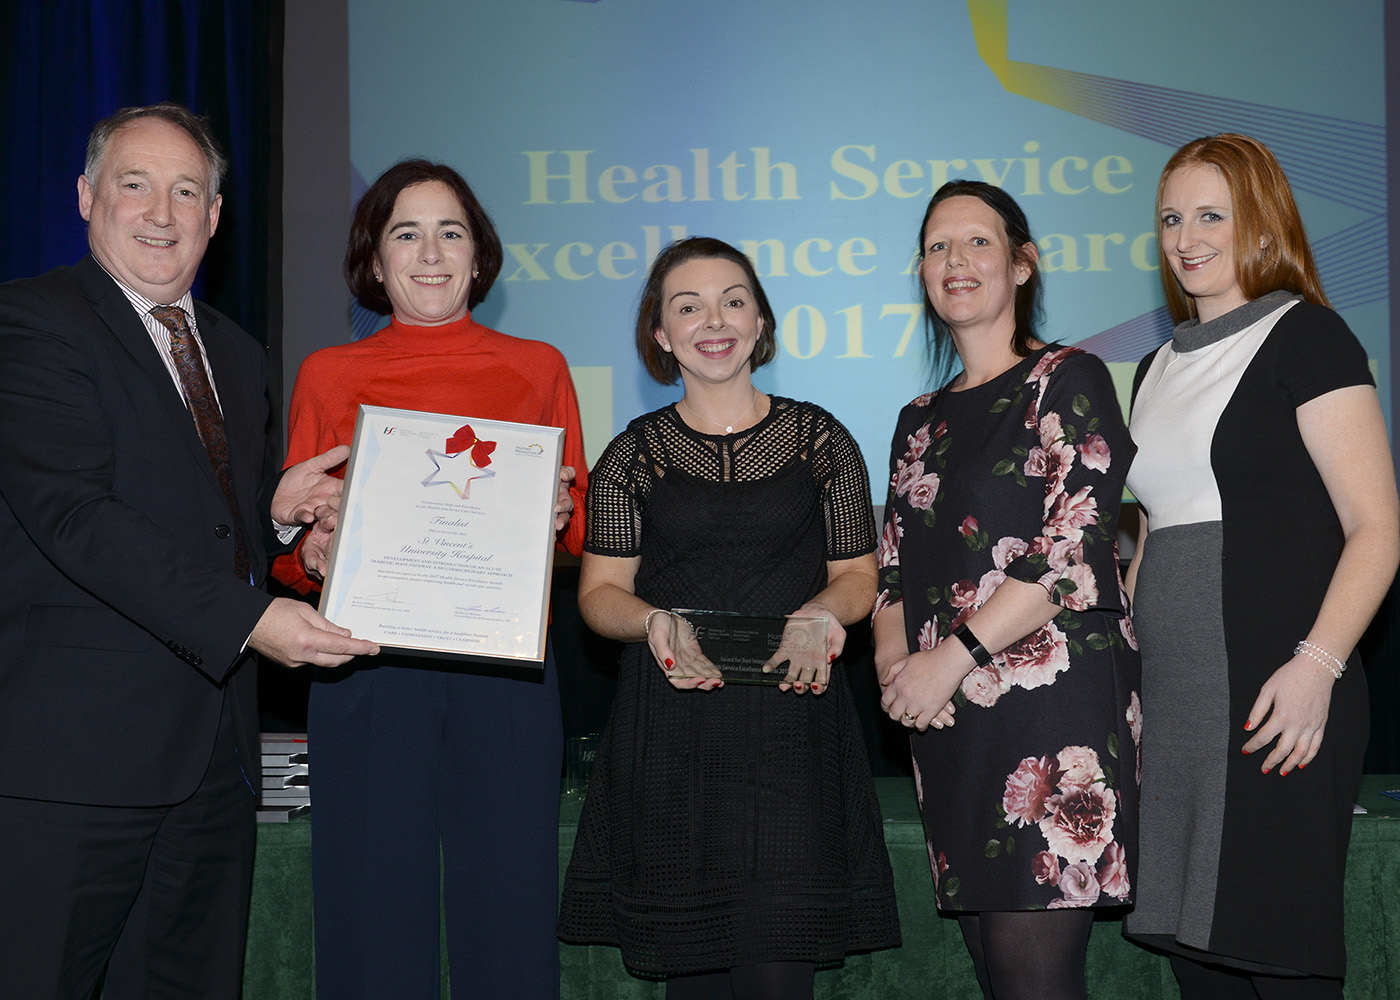 St. Vincent’s University Hospital Wins Best Integration Award at HSE